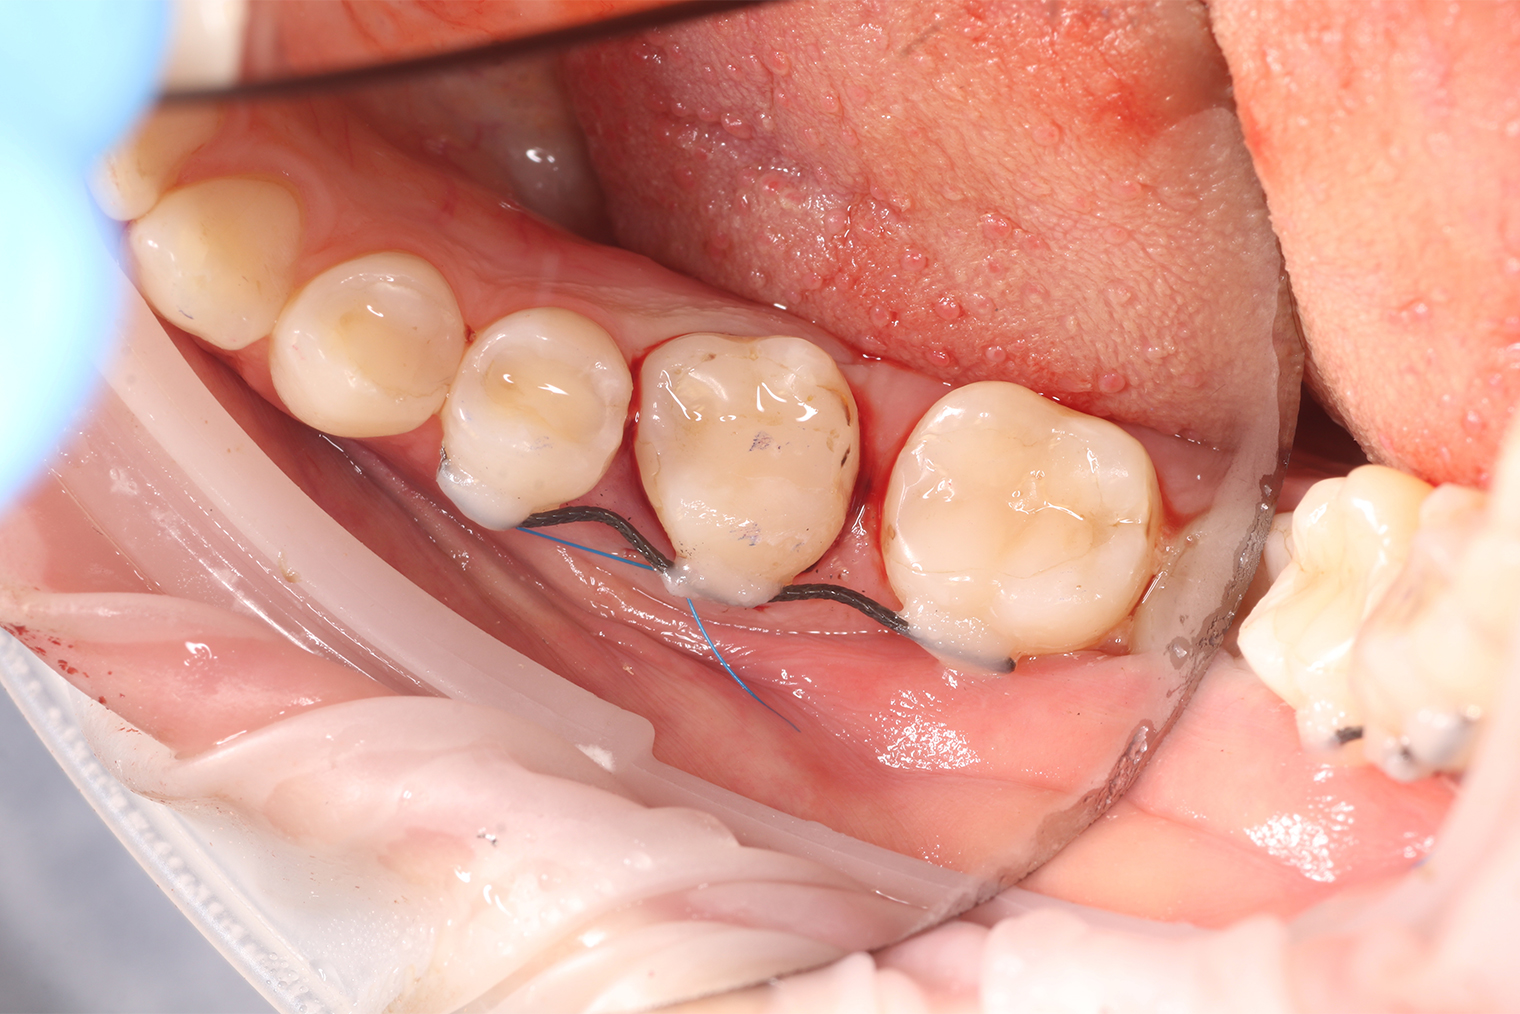 Так выглядит зуб после пересадки, сбоку видно проволочный ретейнер